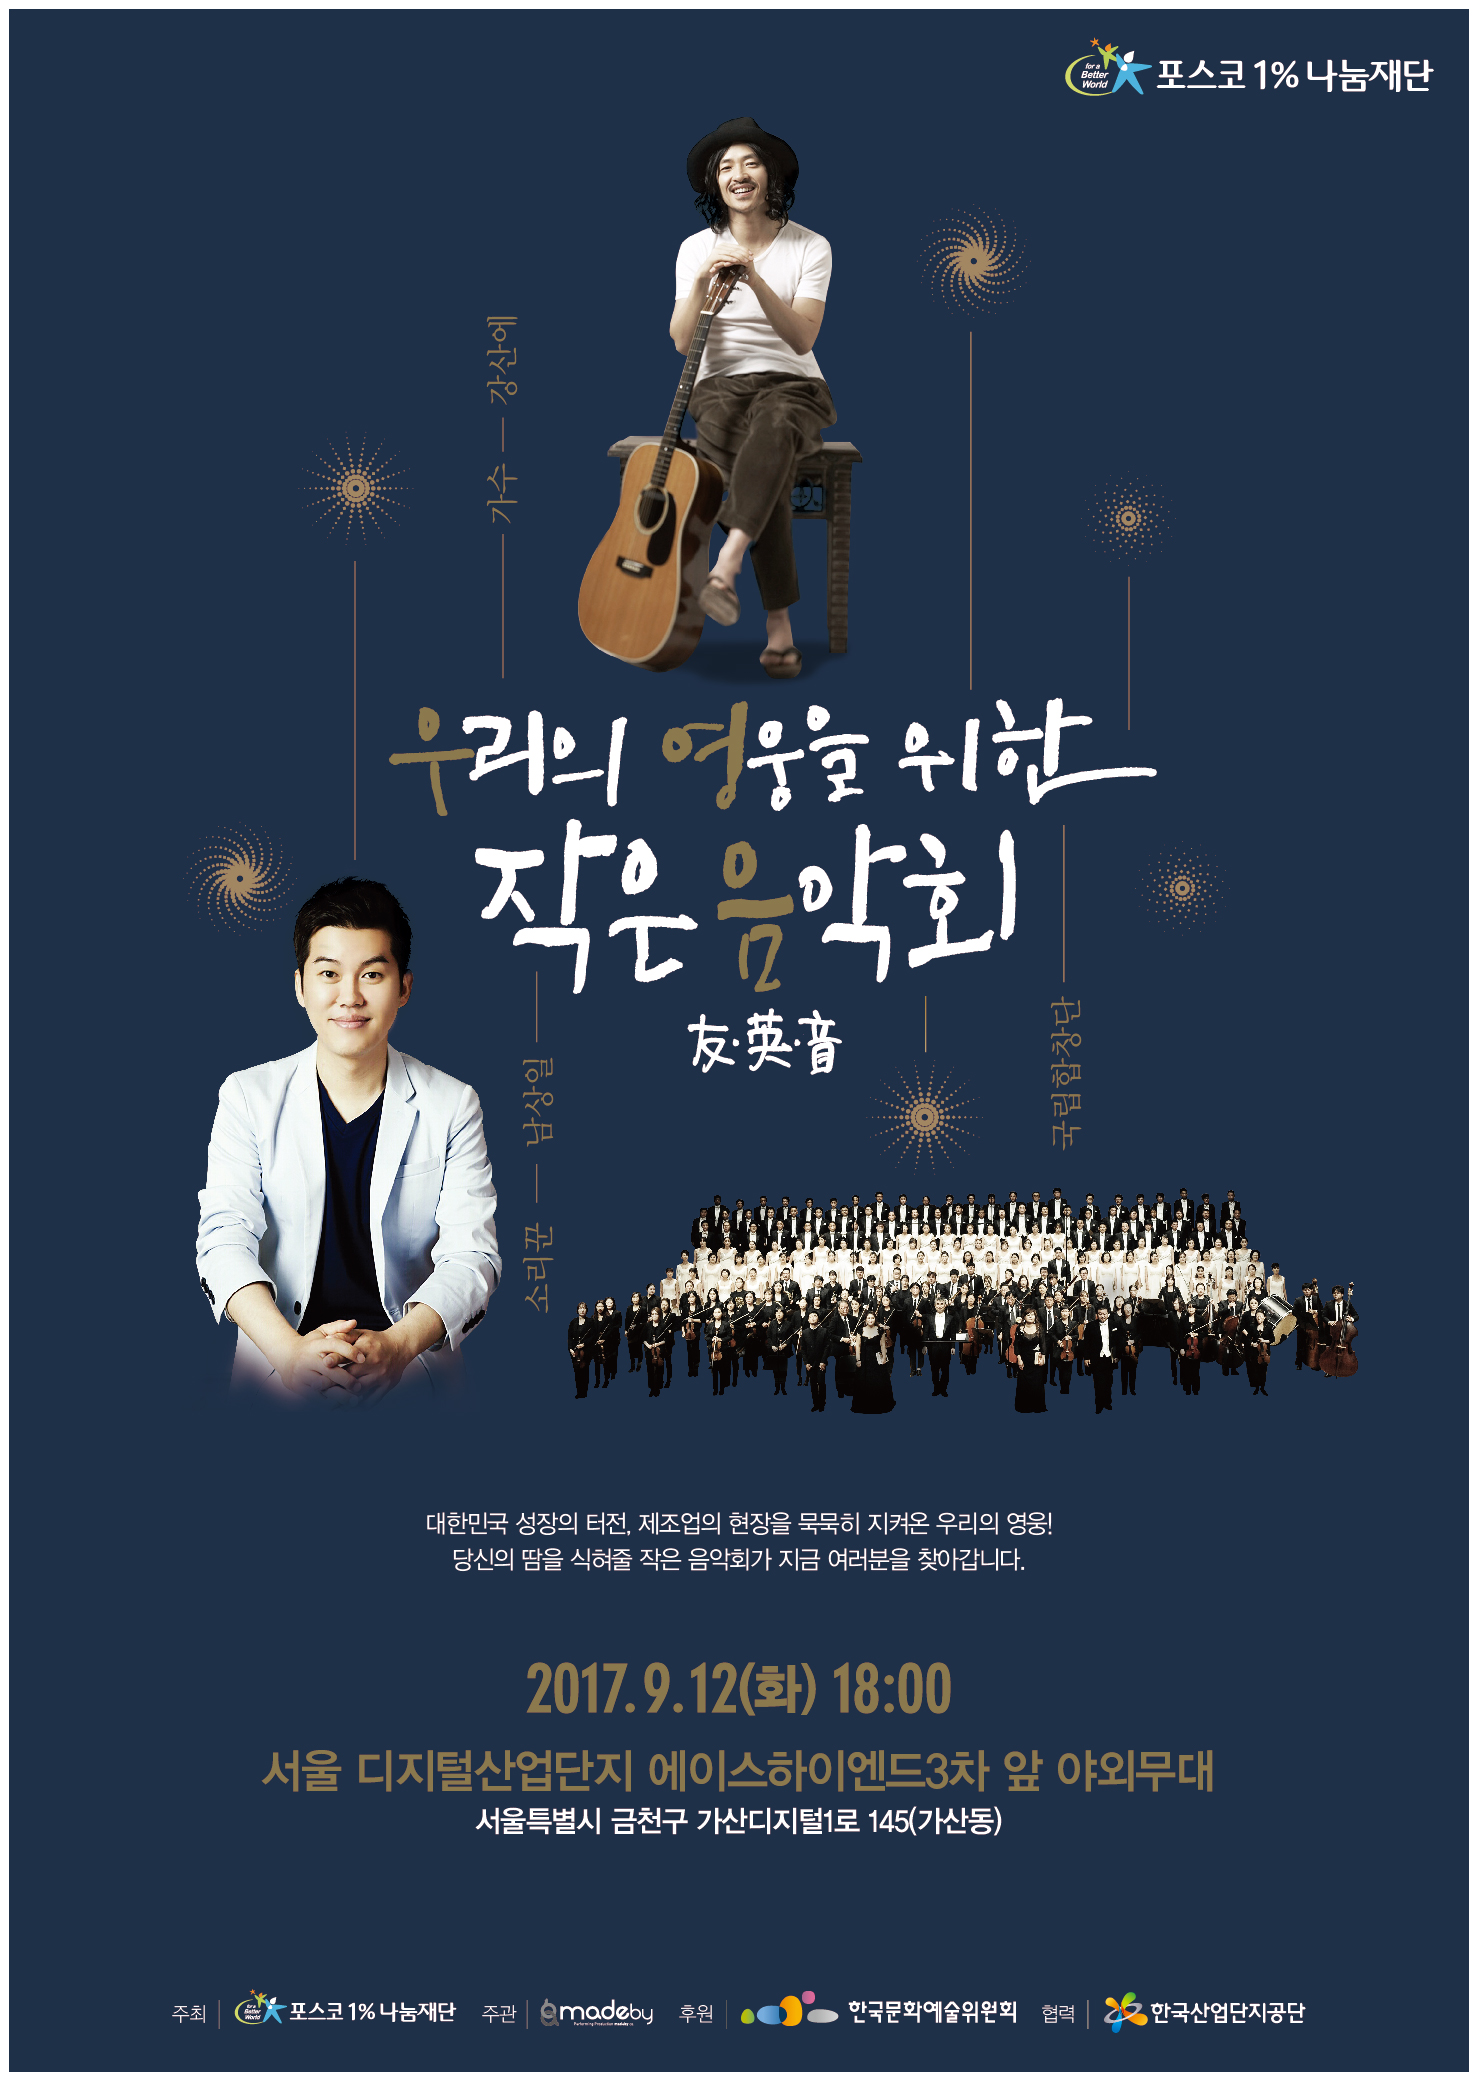 우리의 영웅을 위한 작은 음악회 2017.9.12 화 18:00 서울 디지털산업단지 에이스하이엔드 3차앞 야외무대 